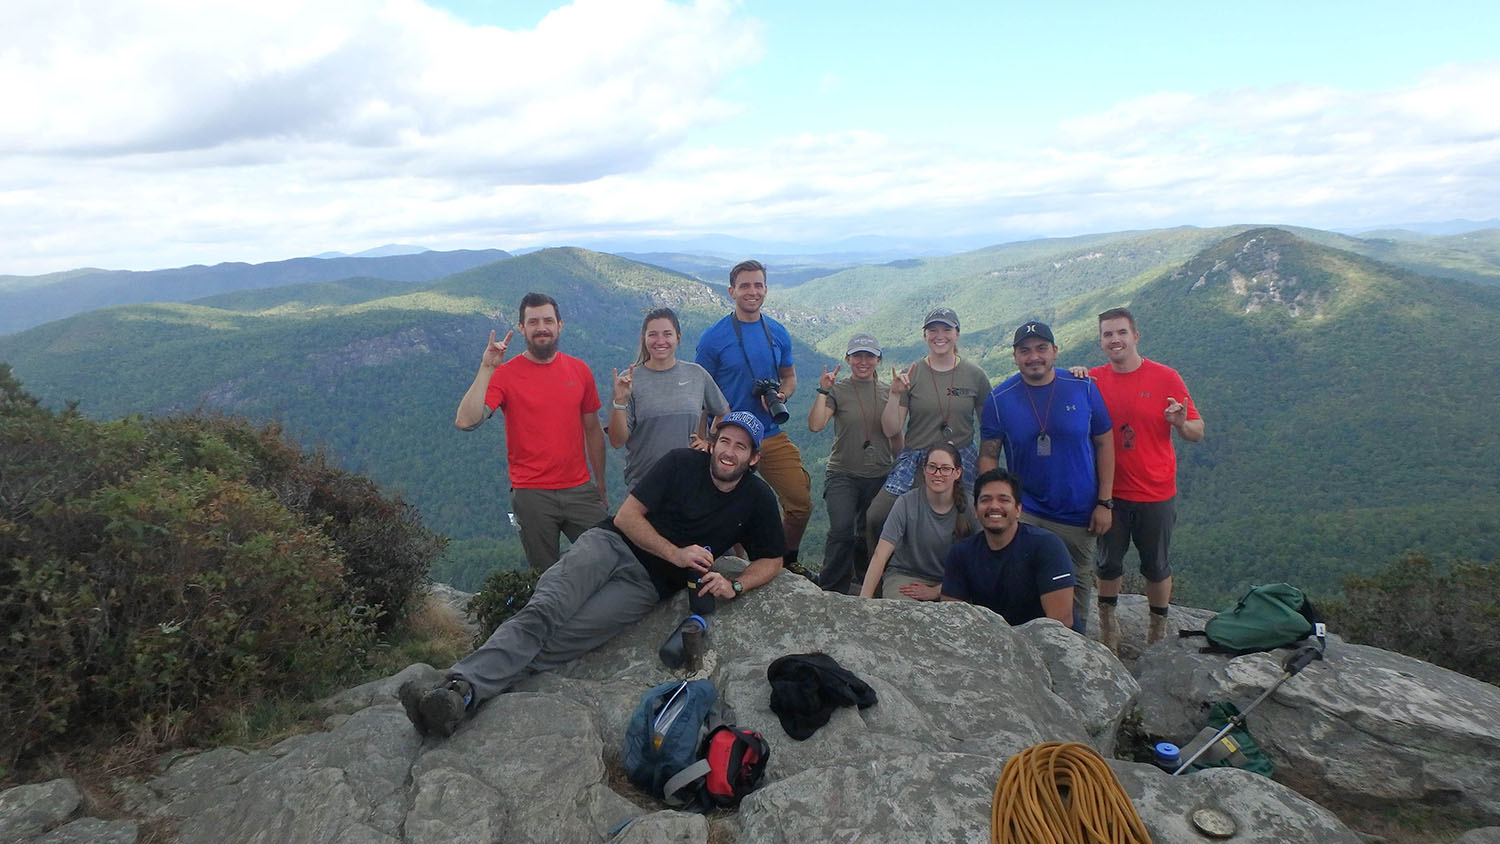 10个微笑的人们为一个小组照片姿势在山顶部